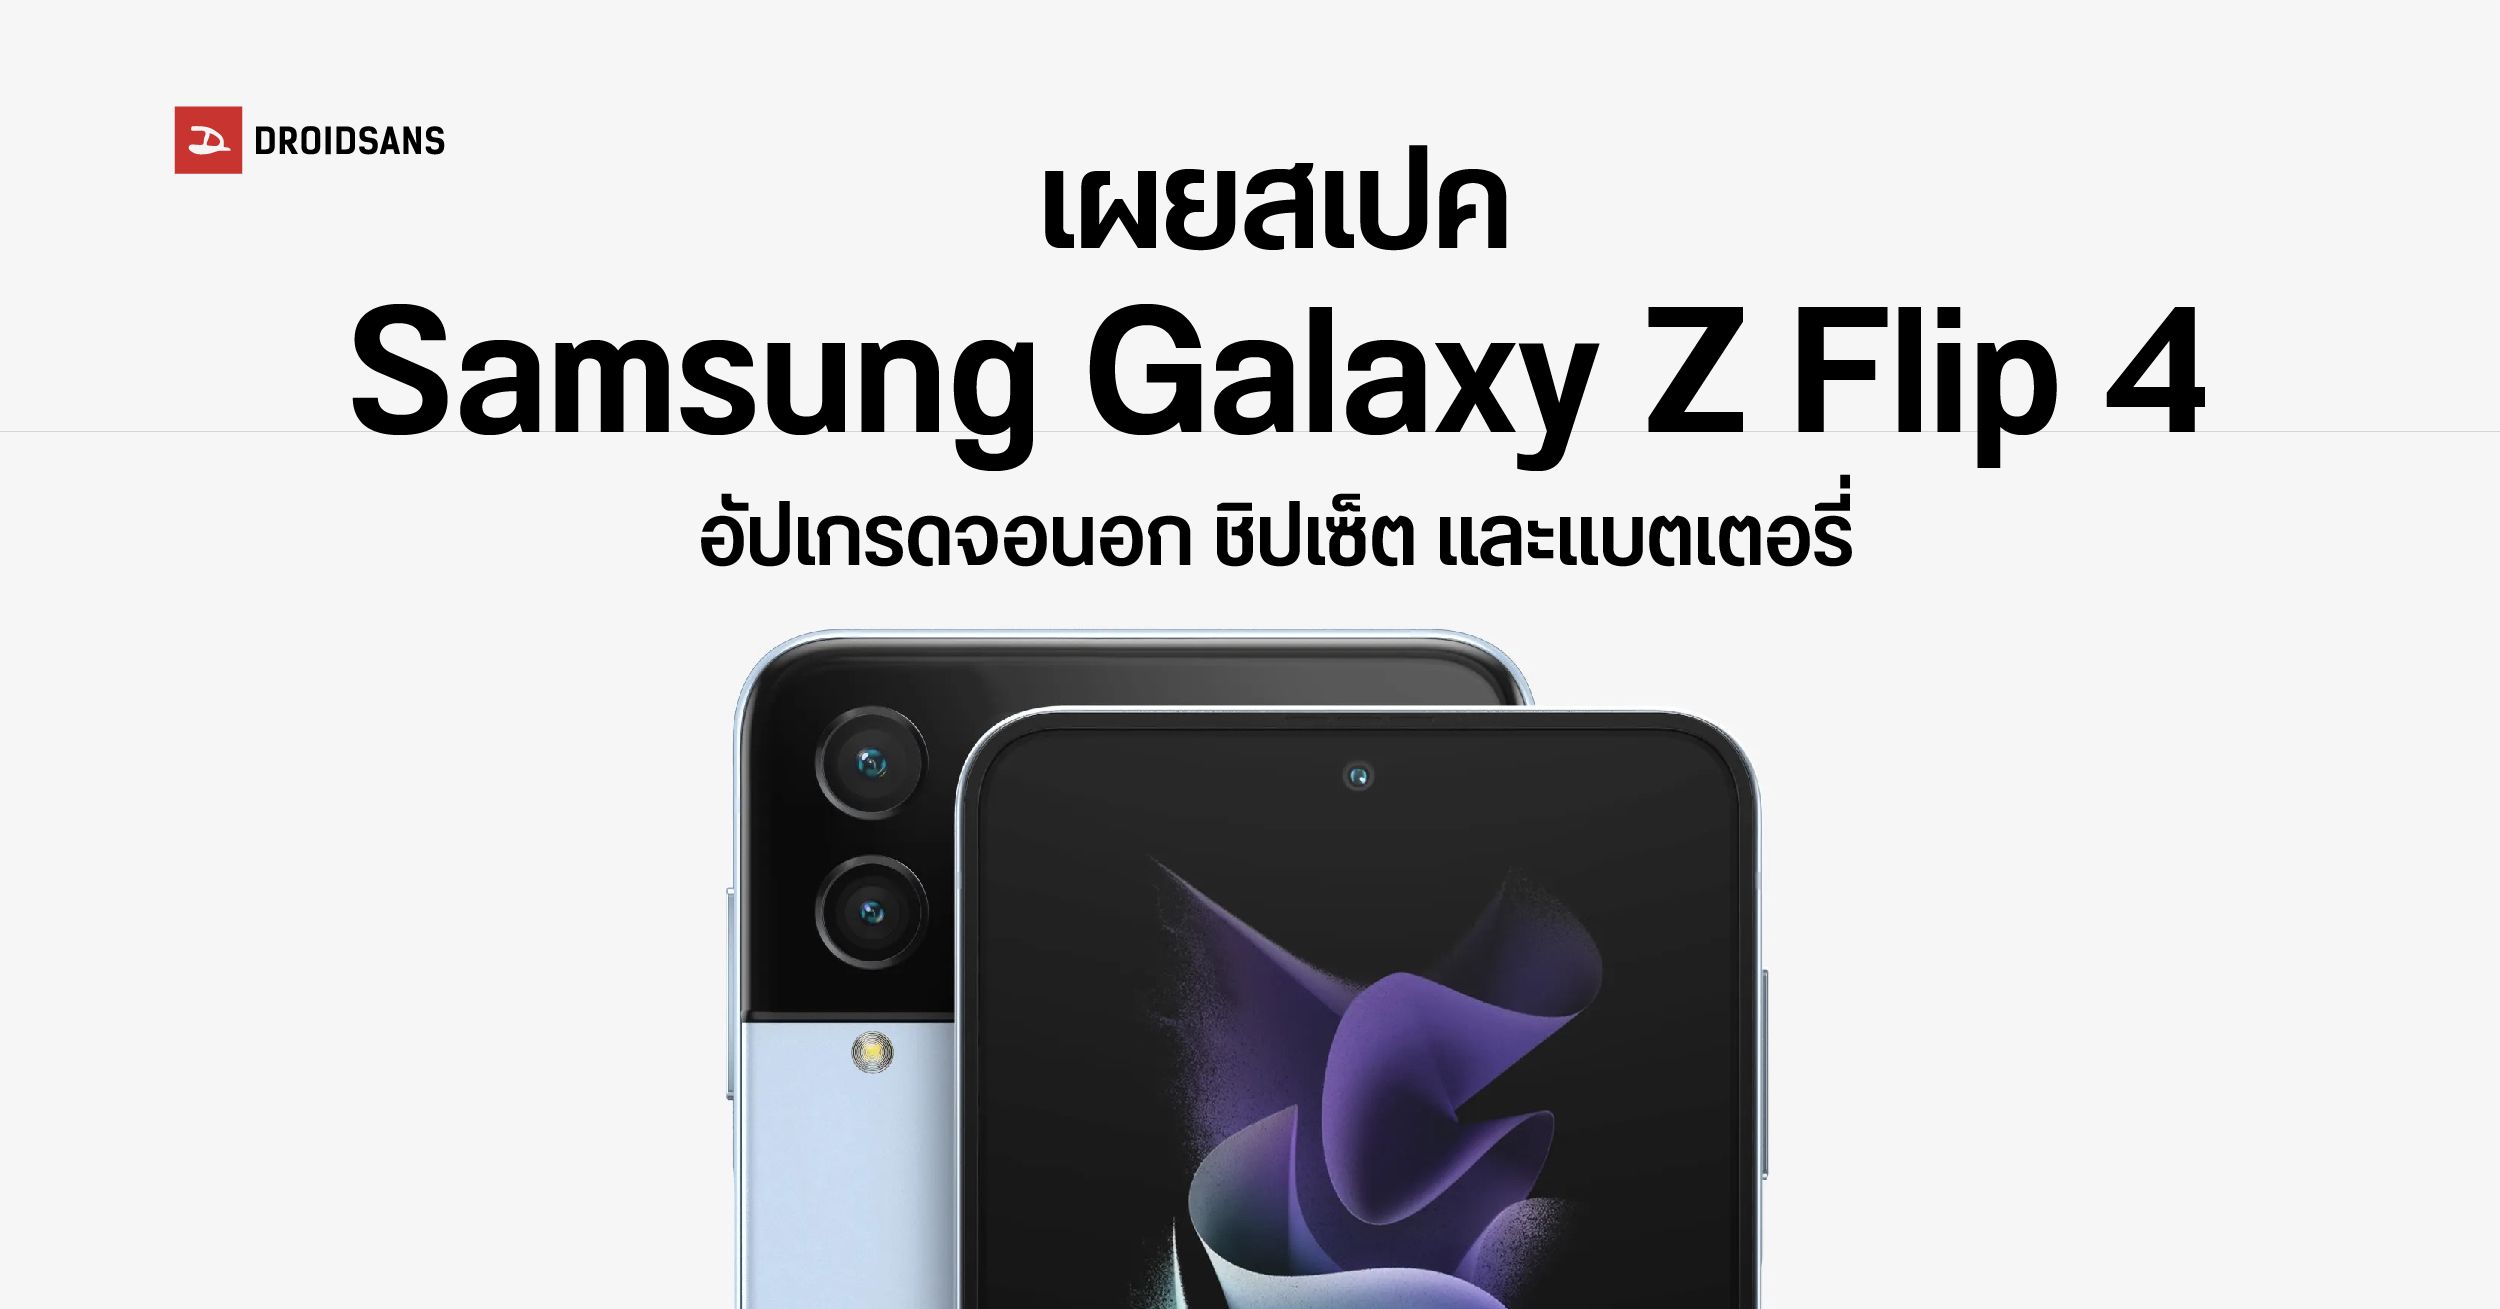 หลุดสเปคเต็ม Samsung Galaxy Z Flip4 จอนอกใหญ่ขึ้น ชิปเซ็ตเรือธงตัวใหม่ พร้อมแบตมากกว่าเดิม